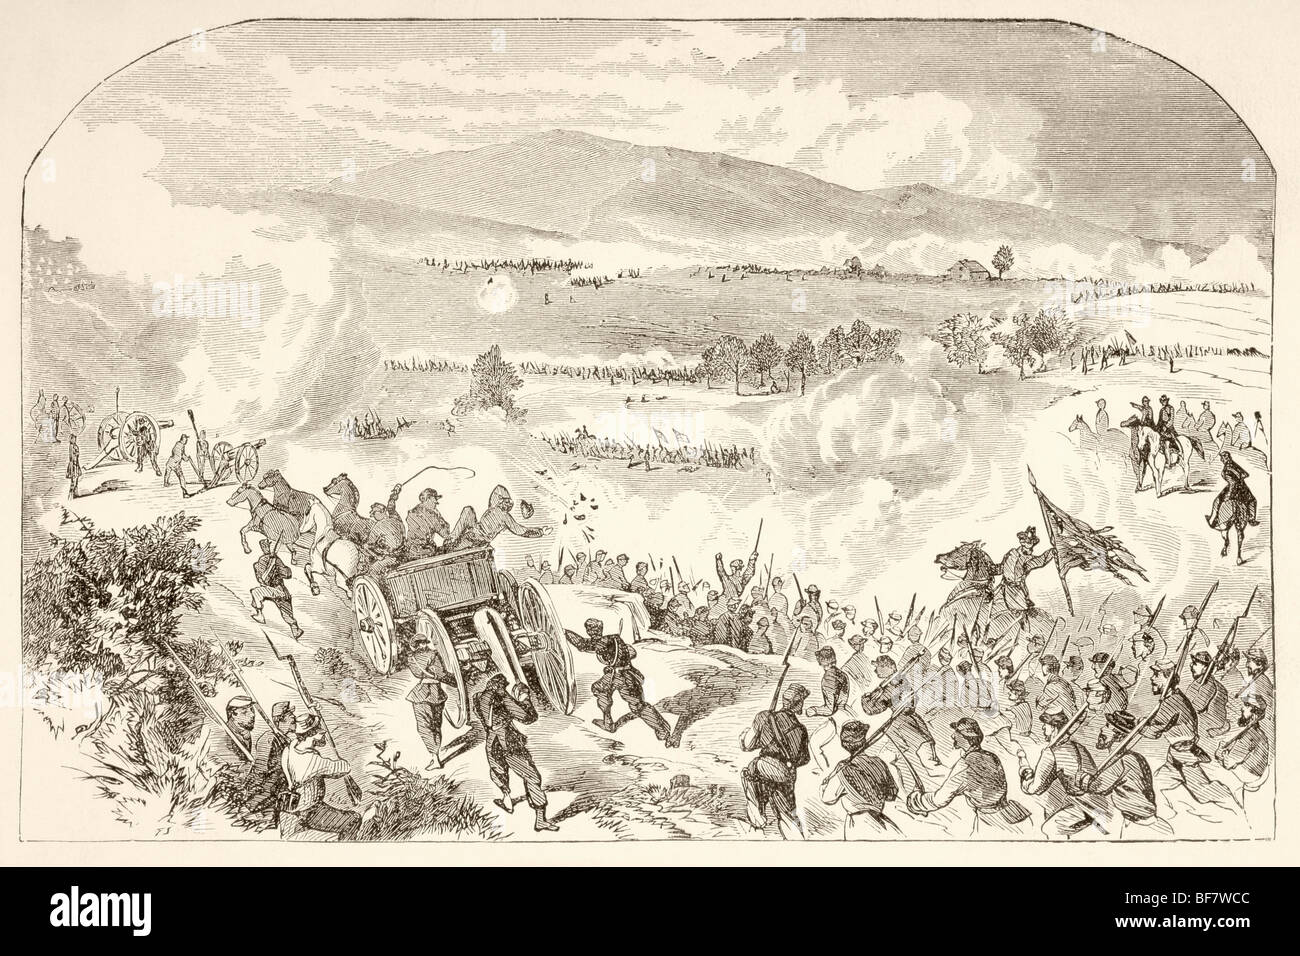 La batalla de Malvern Hill, también conocida como la Batalla de la granja de Poindexter durante la Guerra Civil Americana. Foto de stock